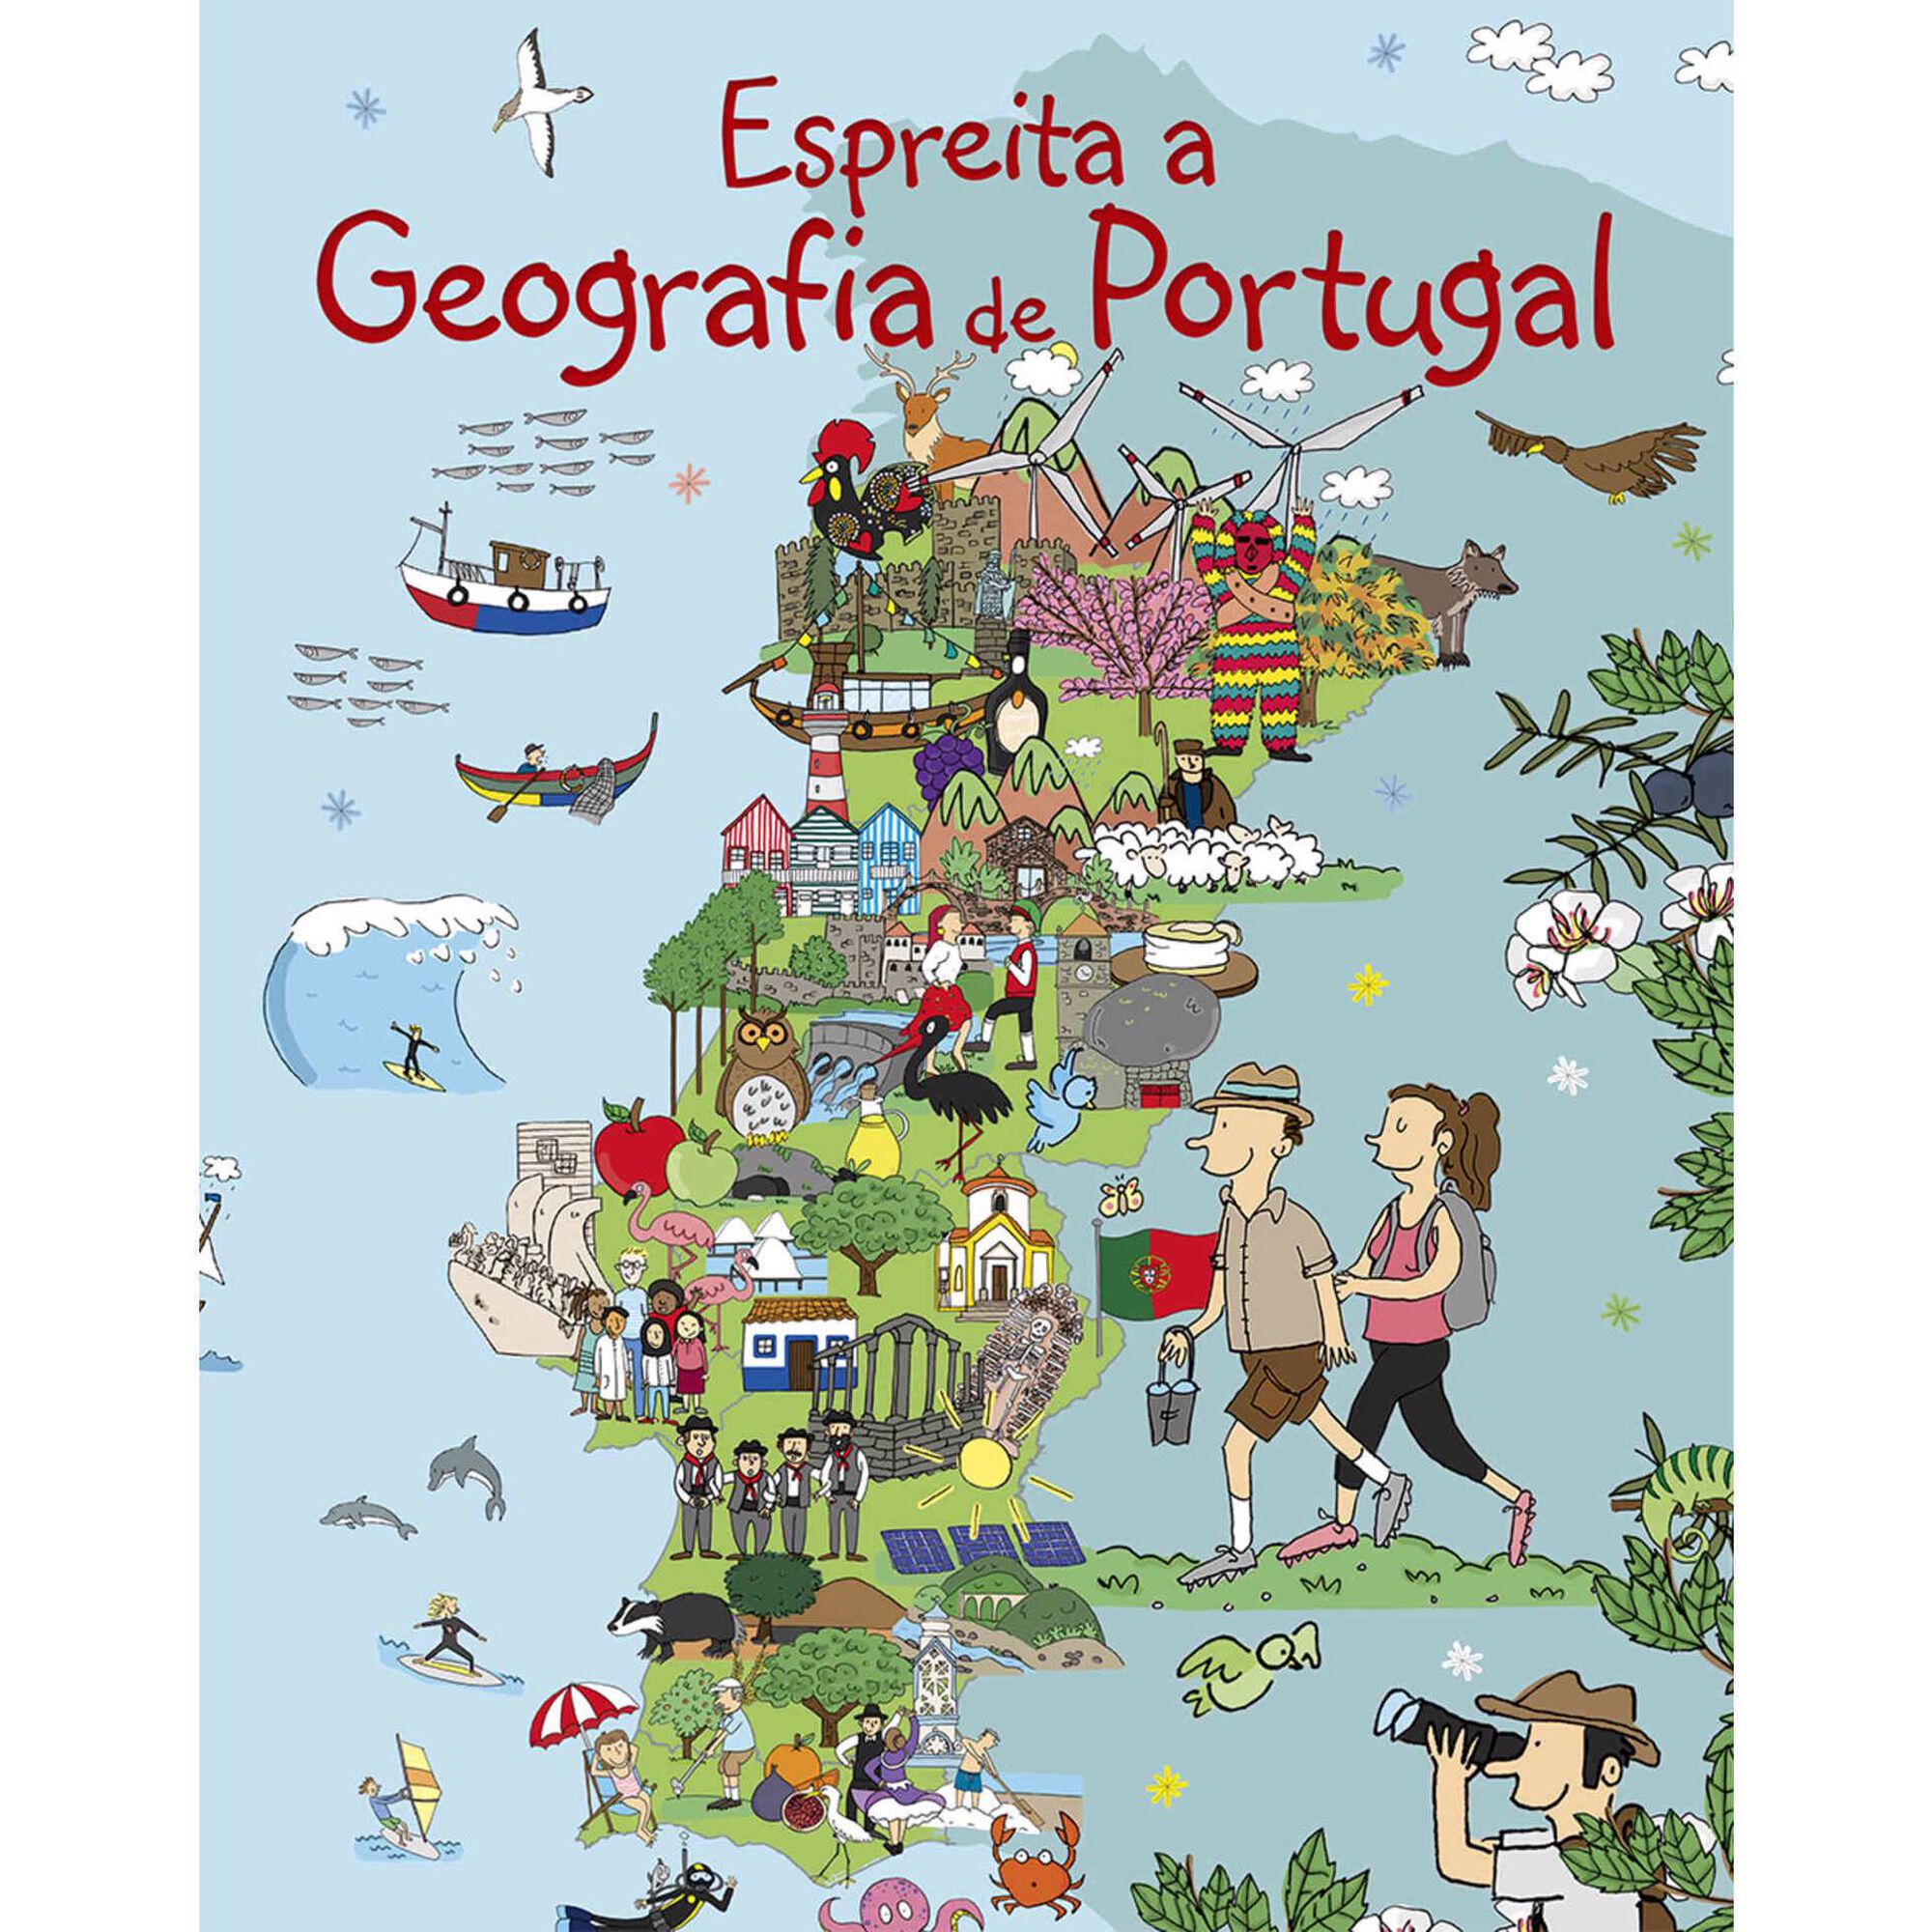 Espreita a Geografia de Portugal